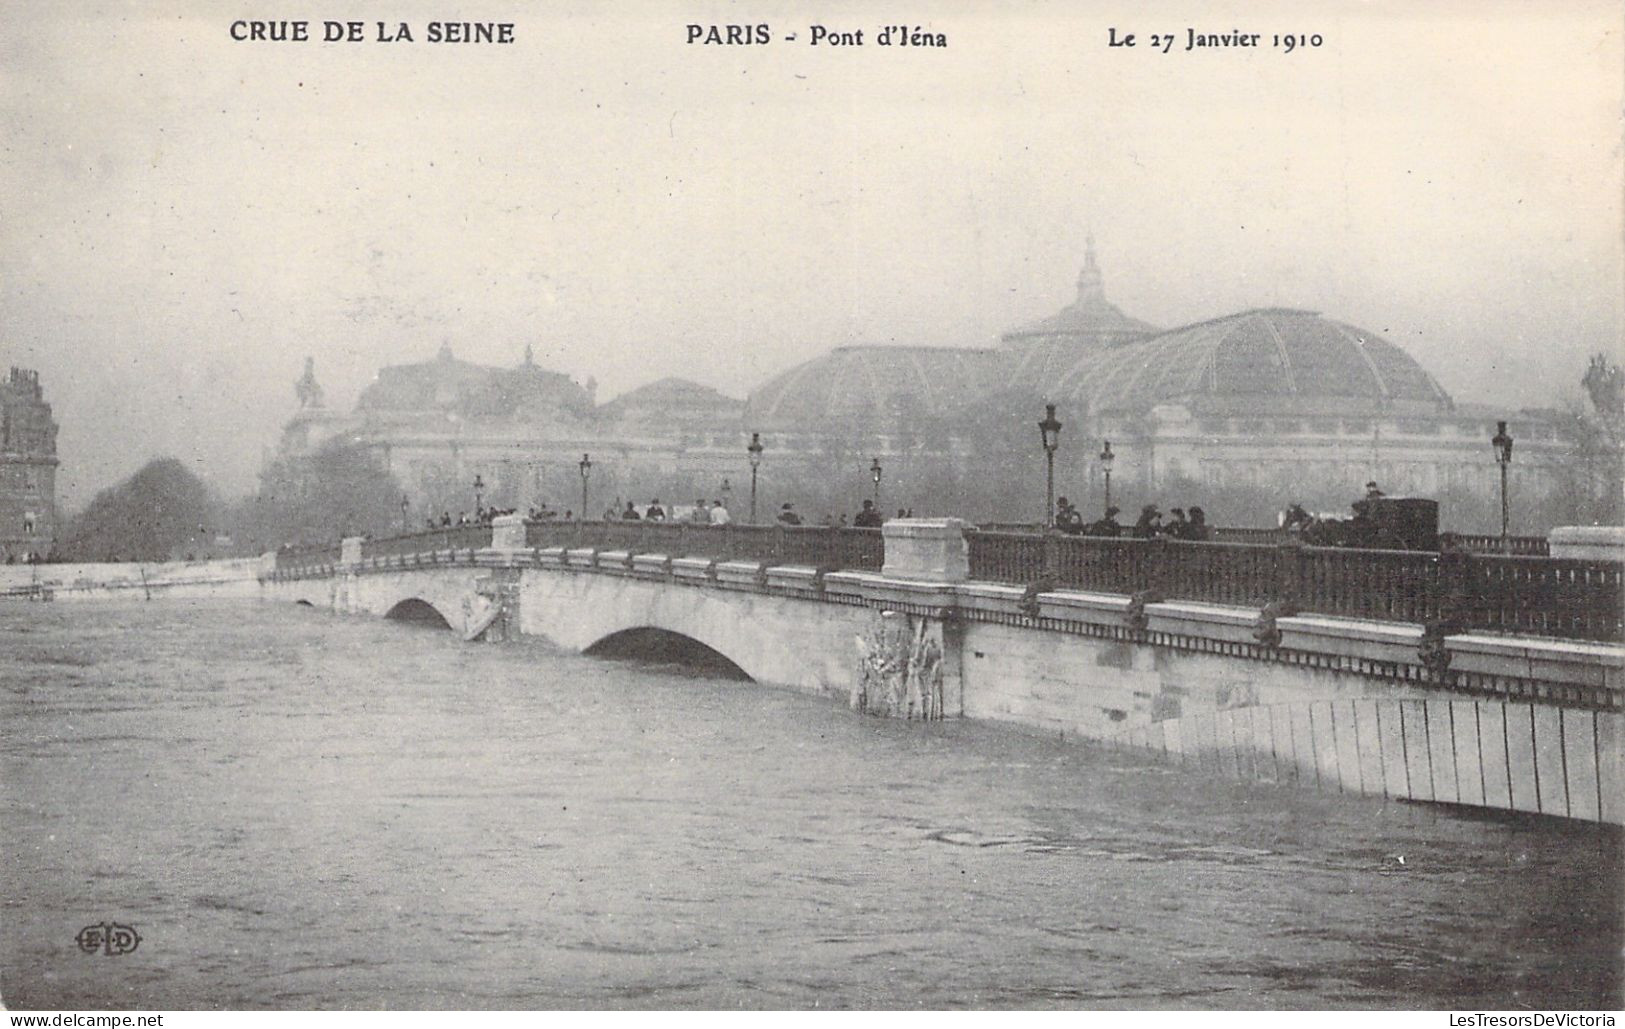 FRANCE - Paris - La Grande Crue De La Seine - Pont D'iéna - 27 Janvier 1910 - Carte Postale Ancienne - The River Seine And Its Banks